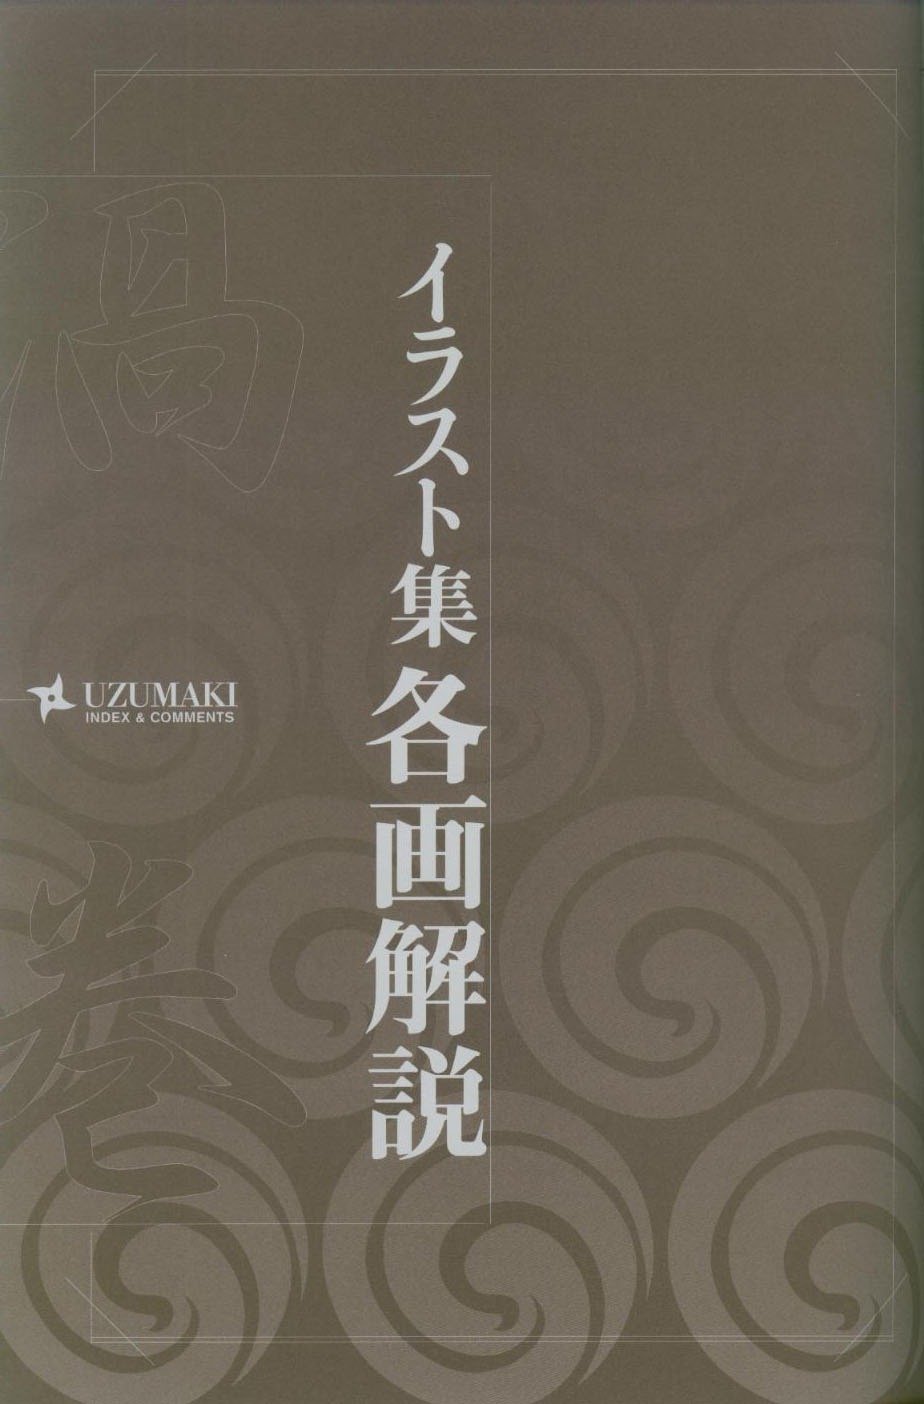 Манга Аниме "Наруто" - артбук "Узумаки" - Глава 1 Страница 106